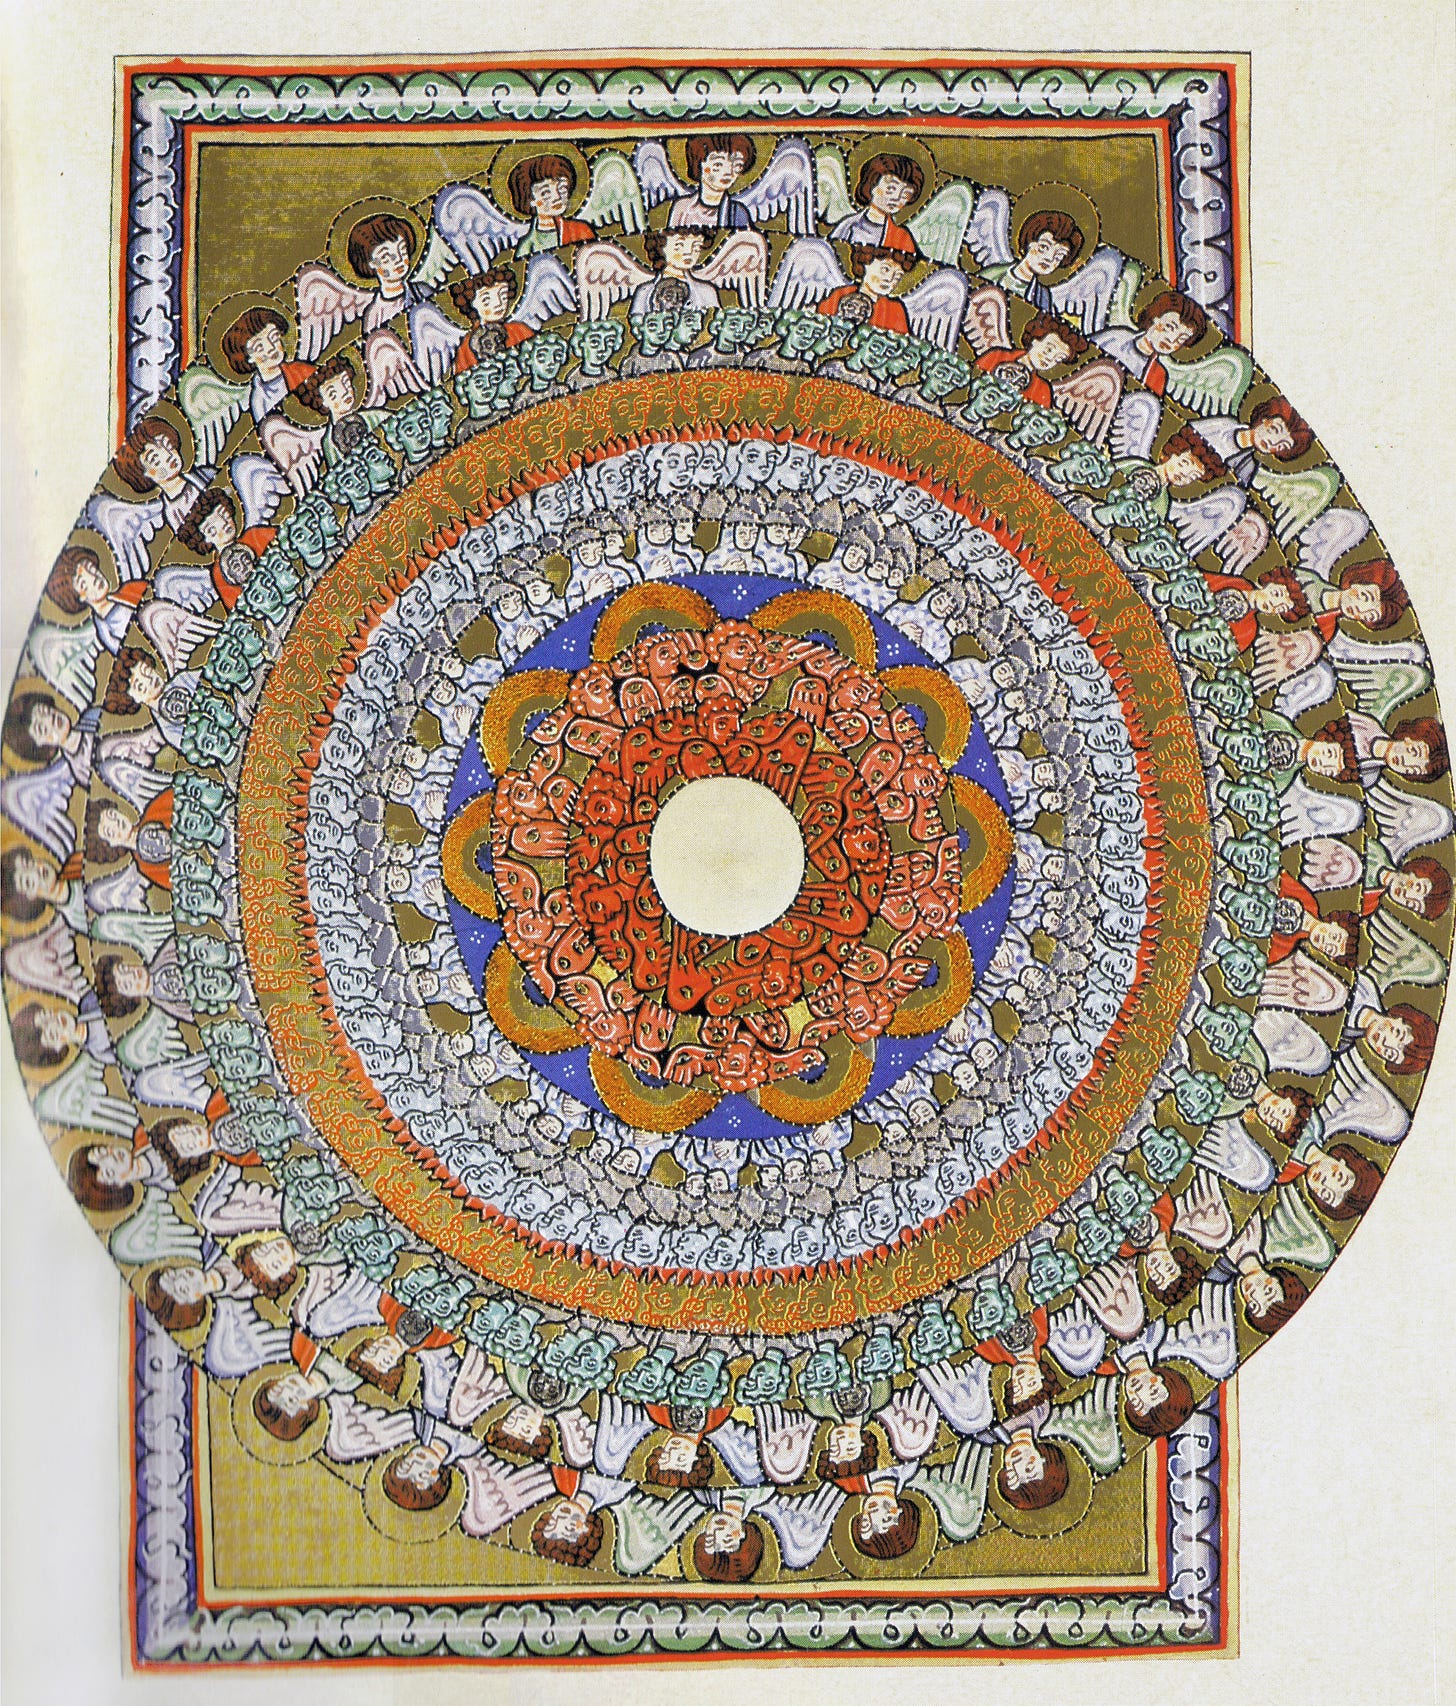 Scivias I.6: The Choirs of Angels by Hildegard von Bingen